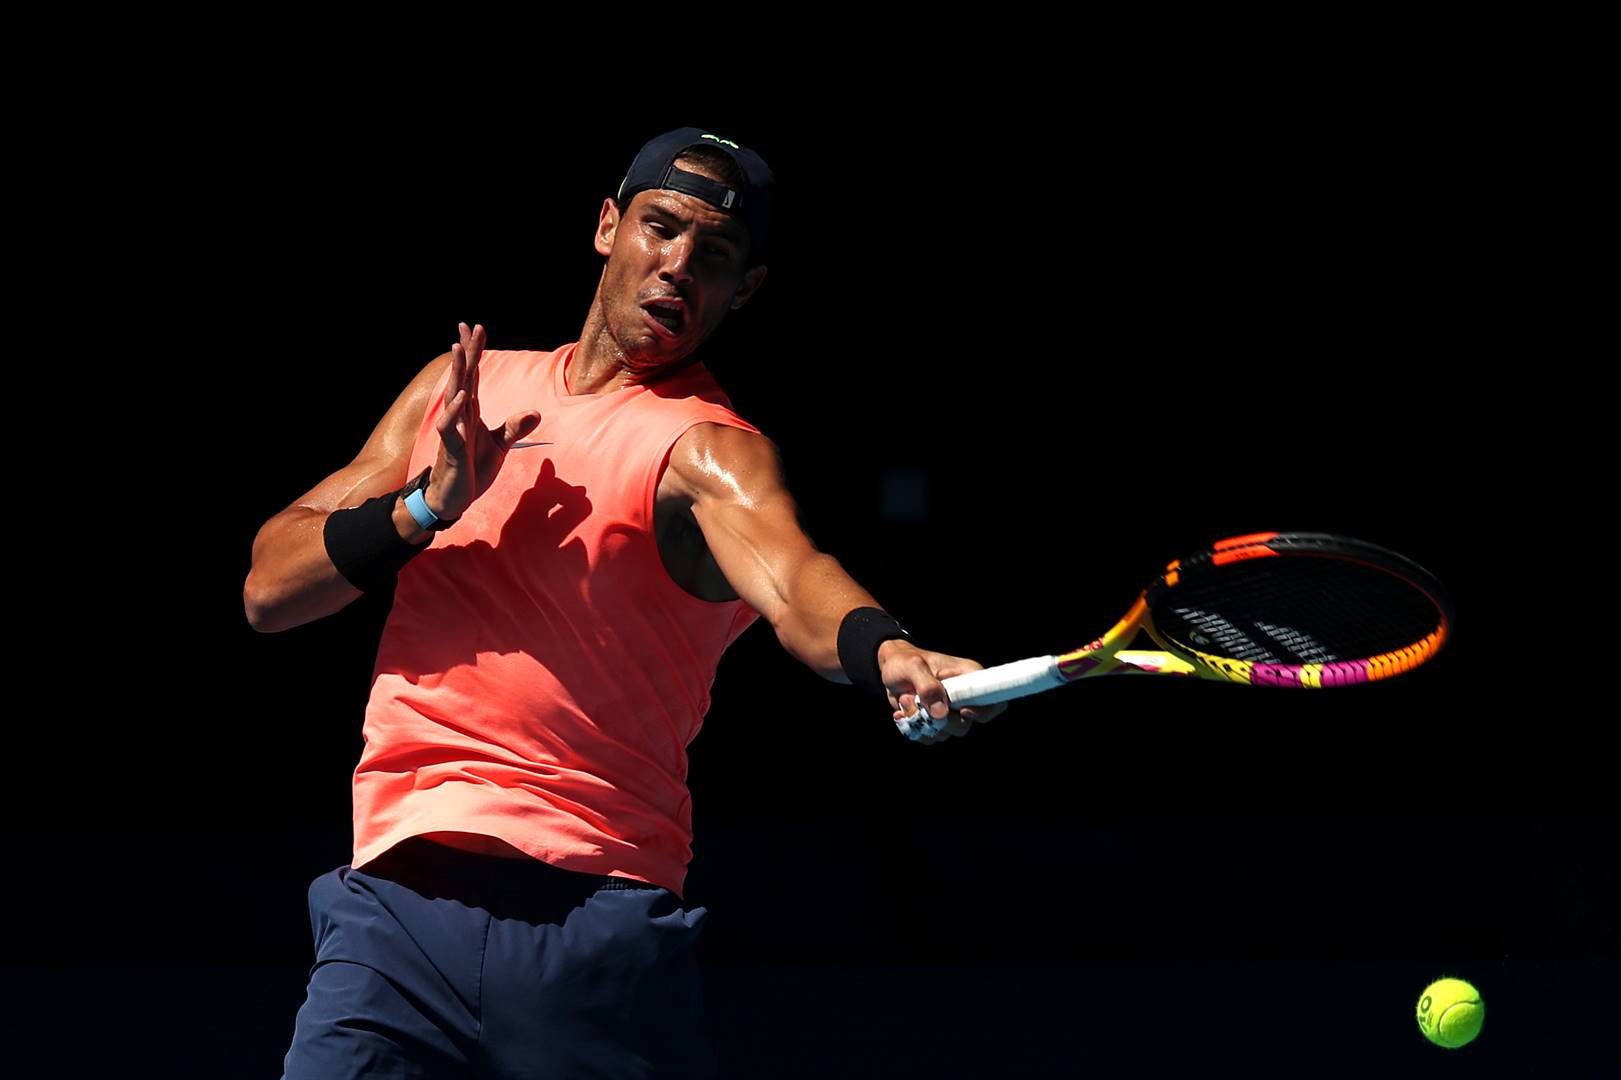 Rafael Nadal gaan die Australiese Ope binne met ’n eerste 2022-titel reeds op sy kerfstok. Foto: Getty Images